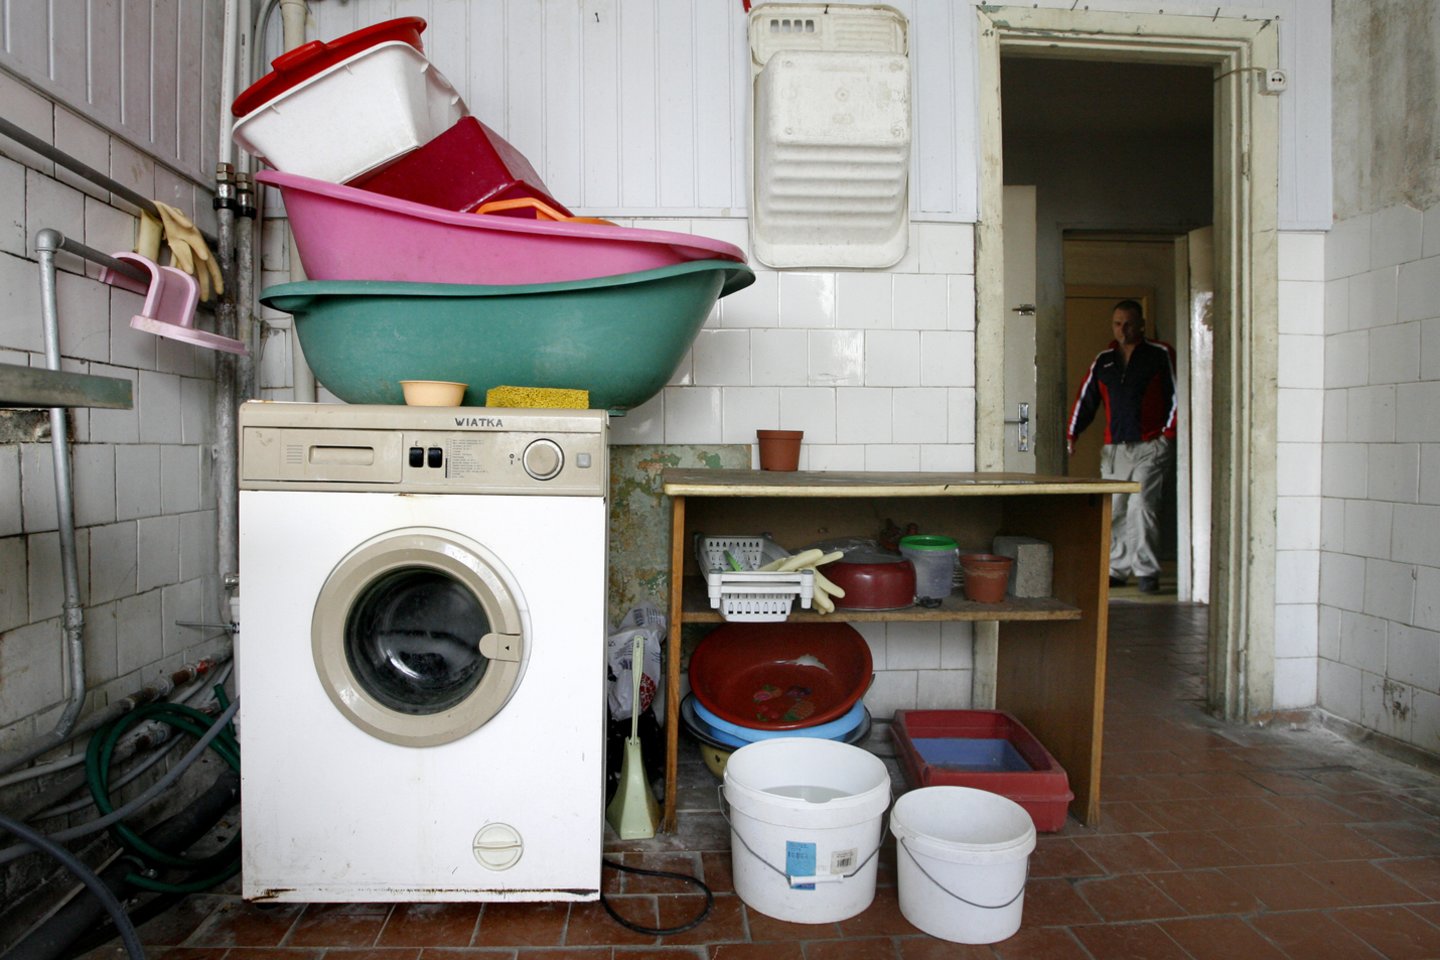 Populiariausia skalbyklės veikimo temperatūra, be abejo, yra 40 laipsnių.<br>V.Balkūno nuotr.